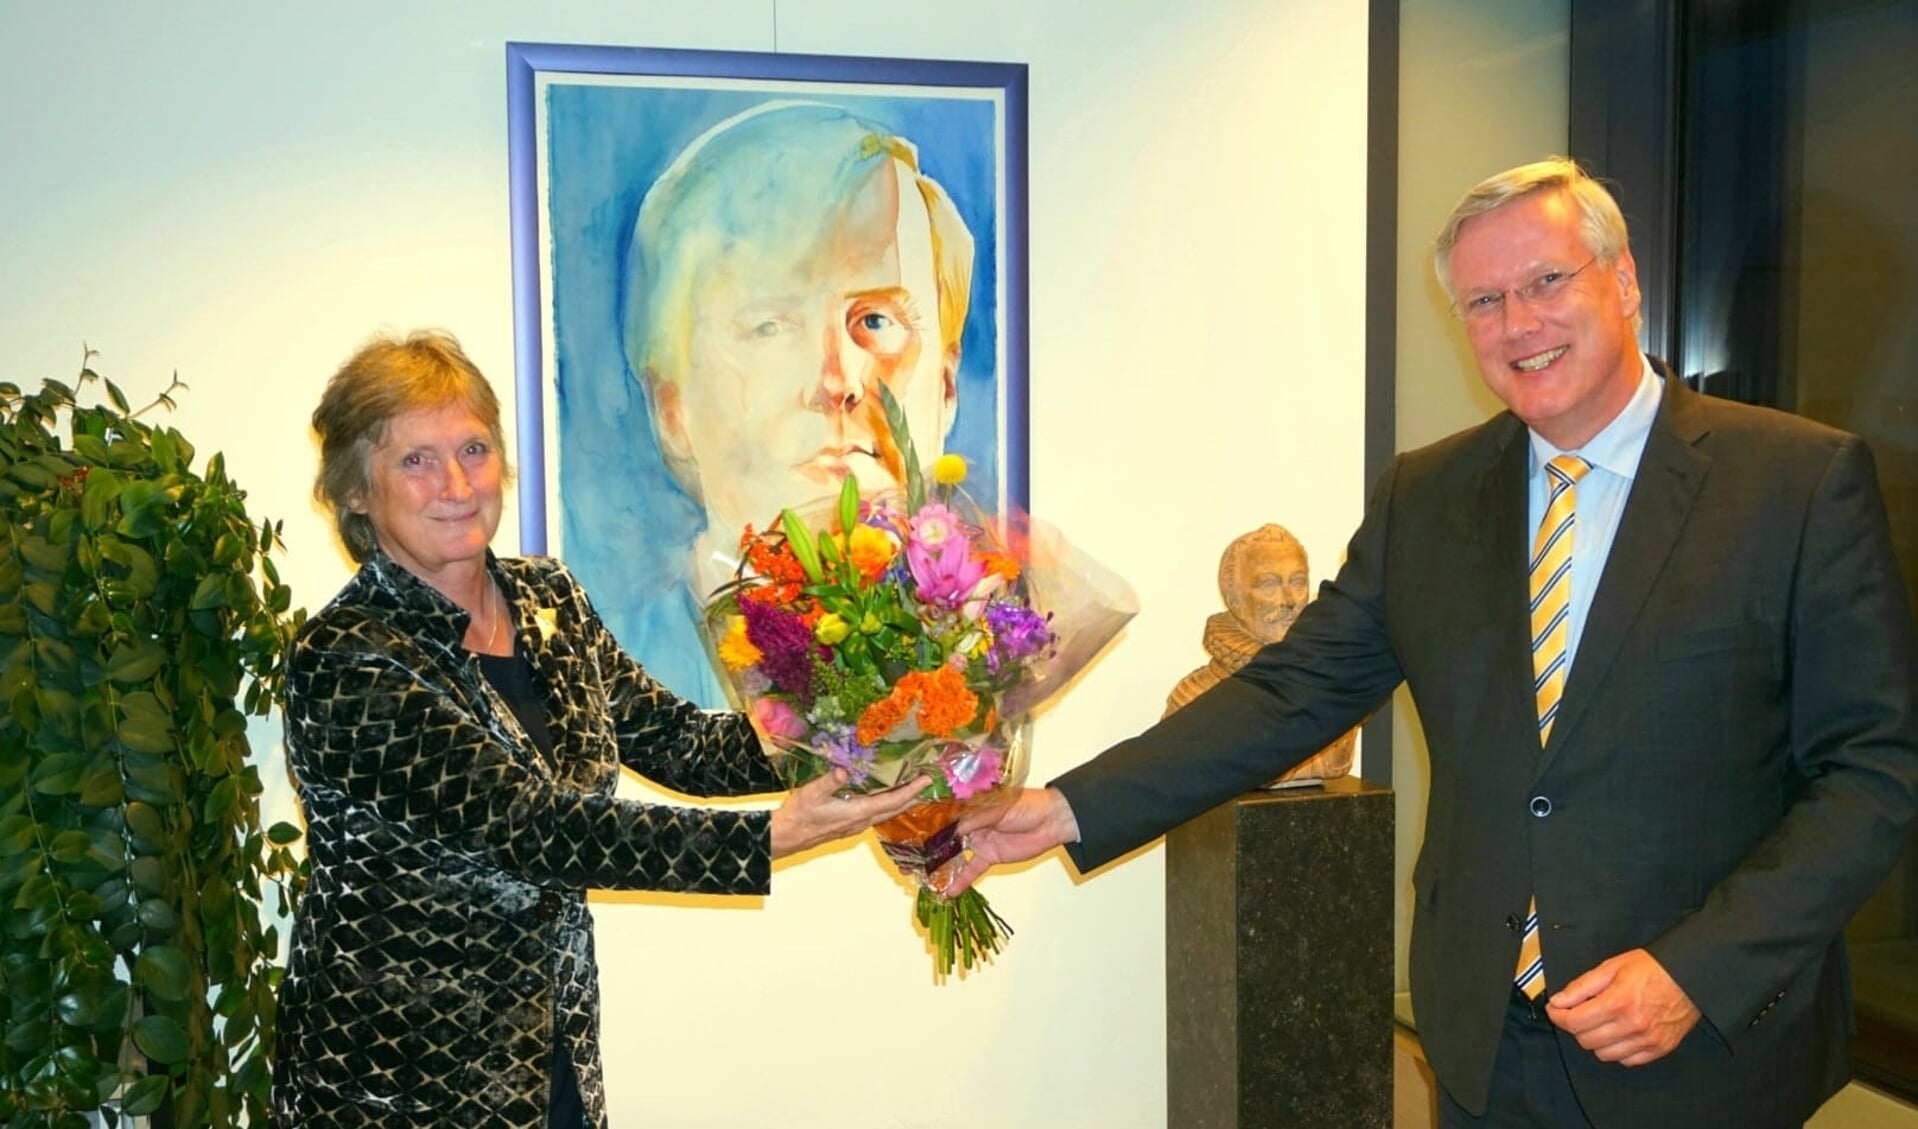 Jon Hermans-Vloedbeld bij haar vórige benoeming als waarnemend burgemeester van Tubbergen.